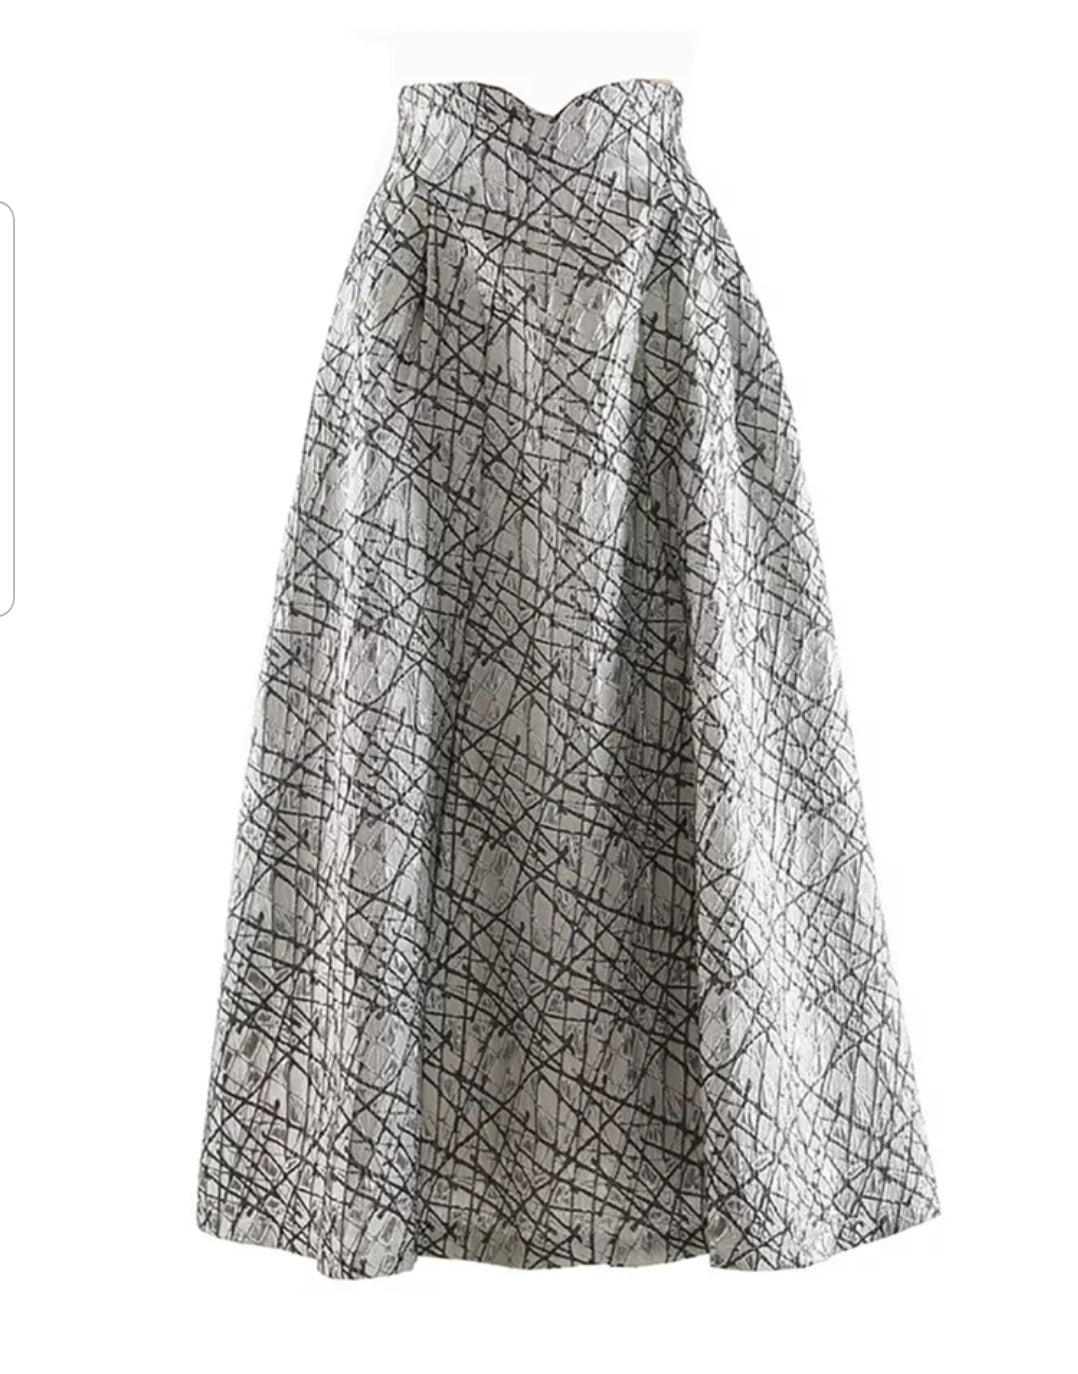 Monalisa Skirt